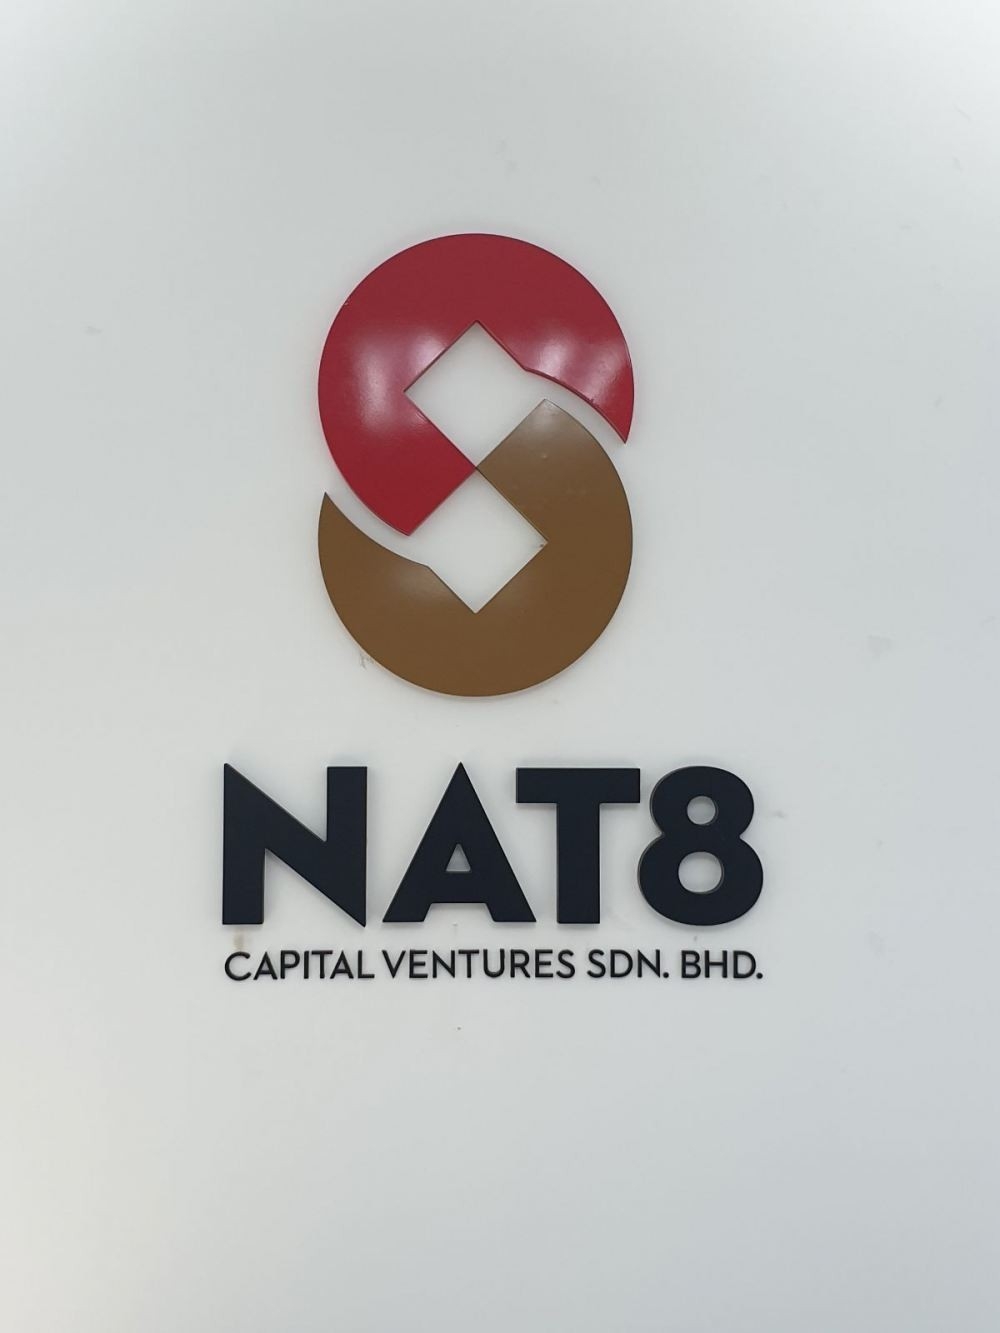 3D Logo